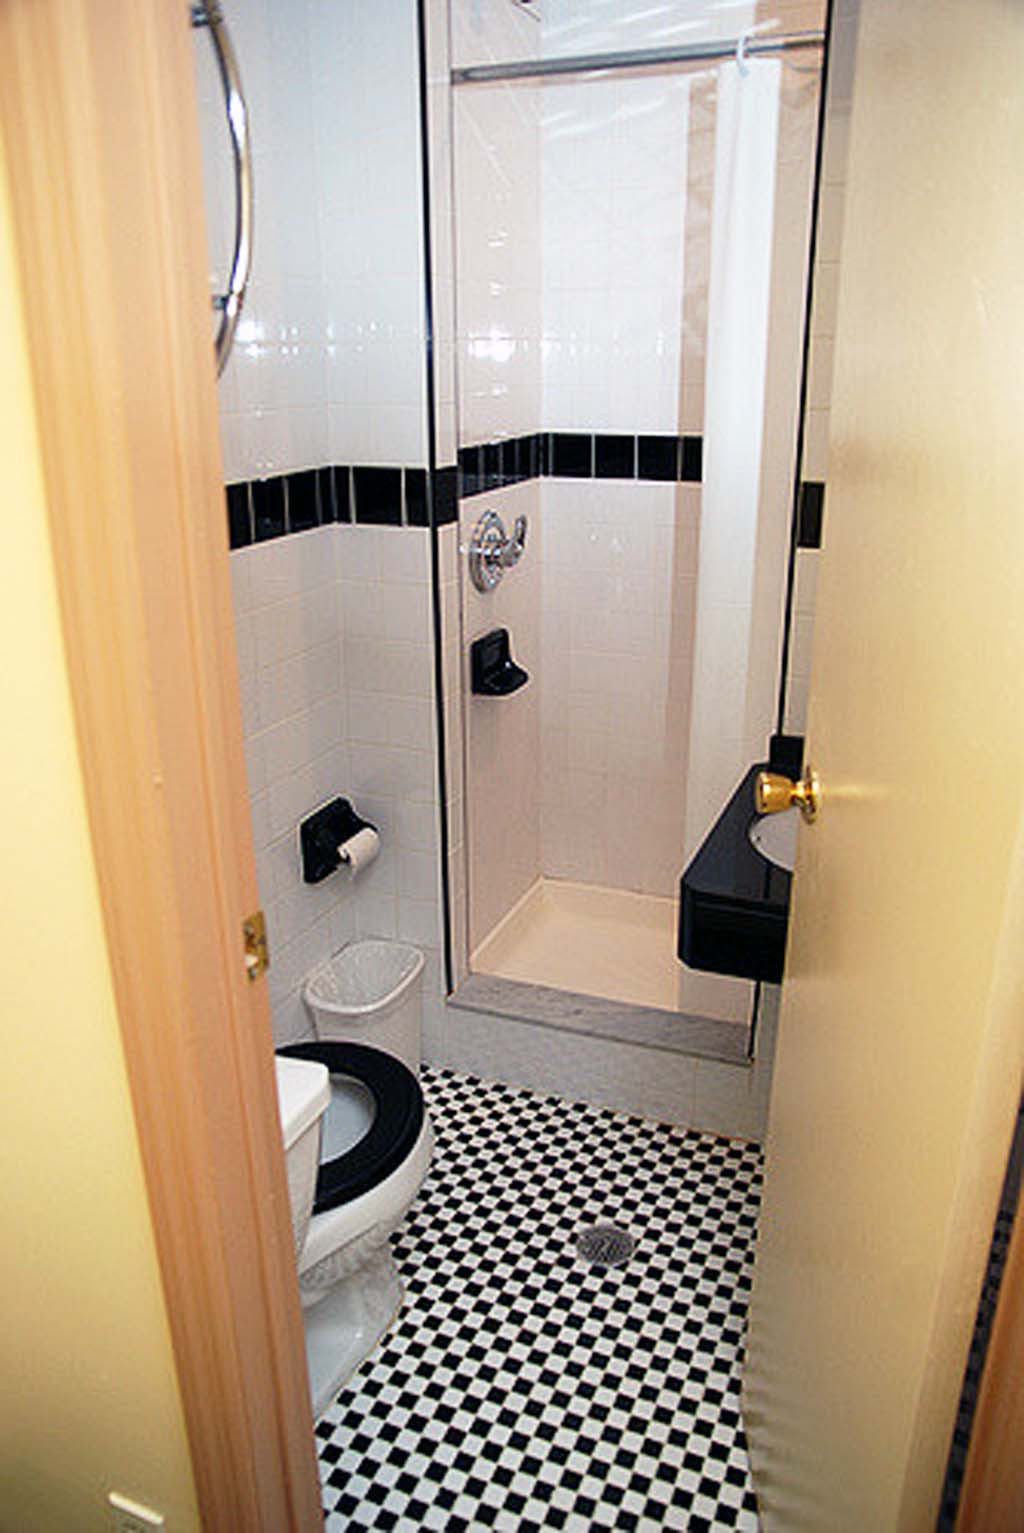 desain kamar mandi sederhana dan murah terbaru 2017 ndik